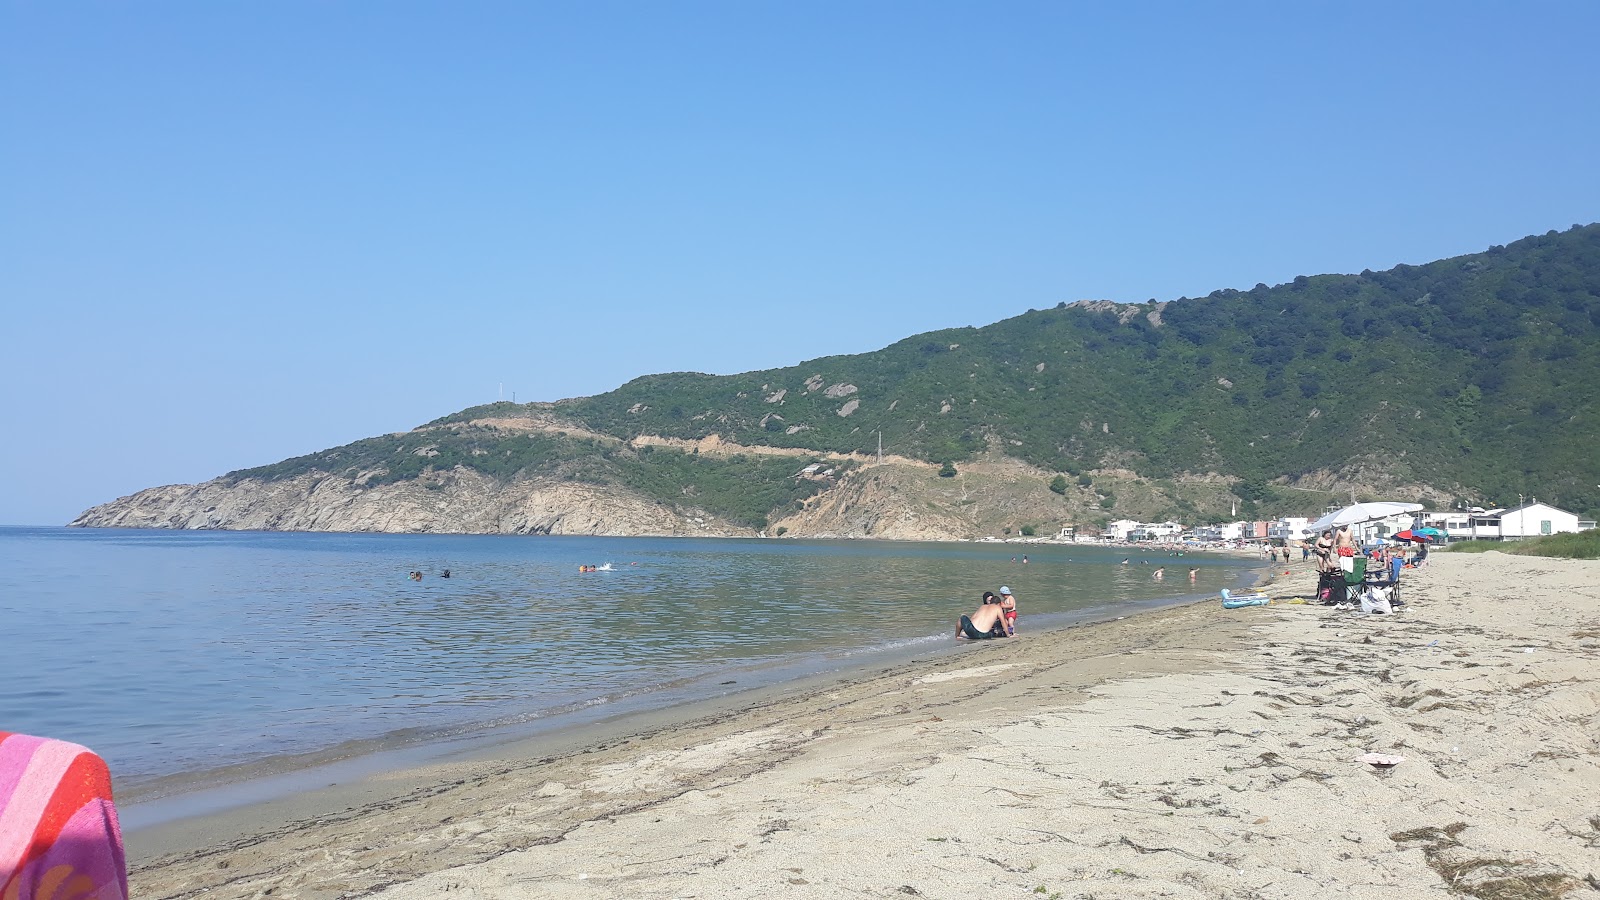 Foto de Ormanli beach área de comodidades